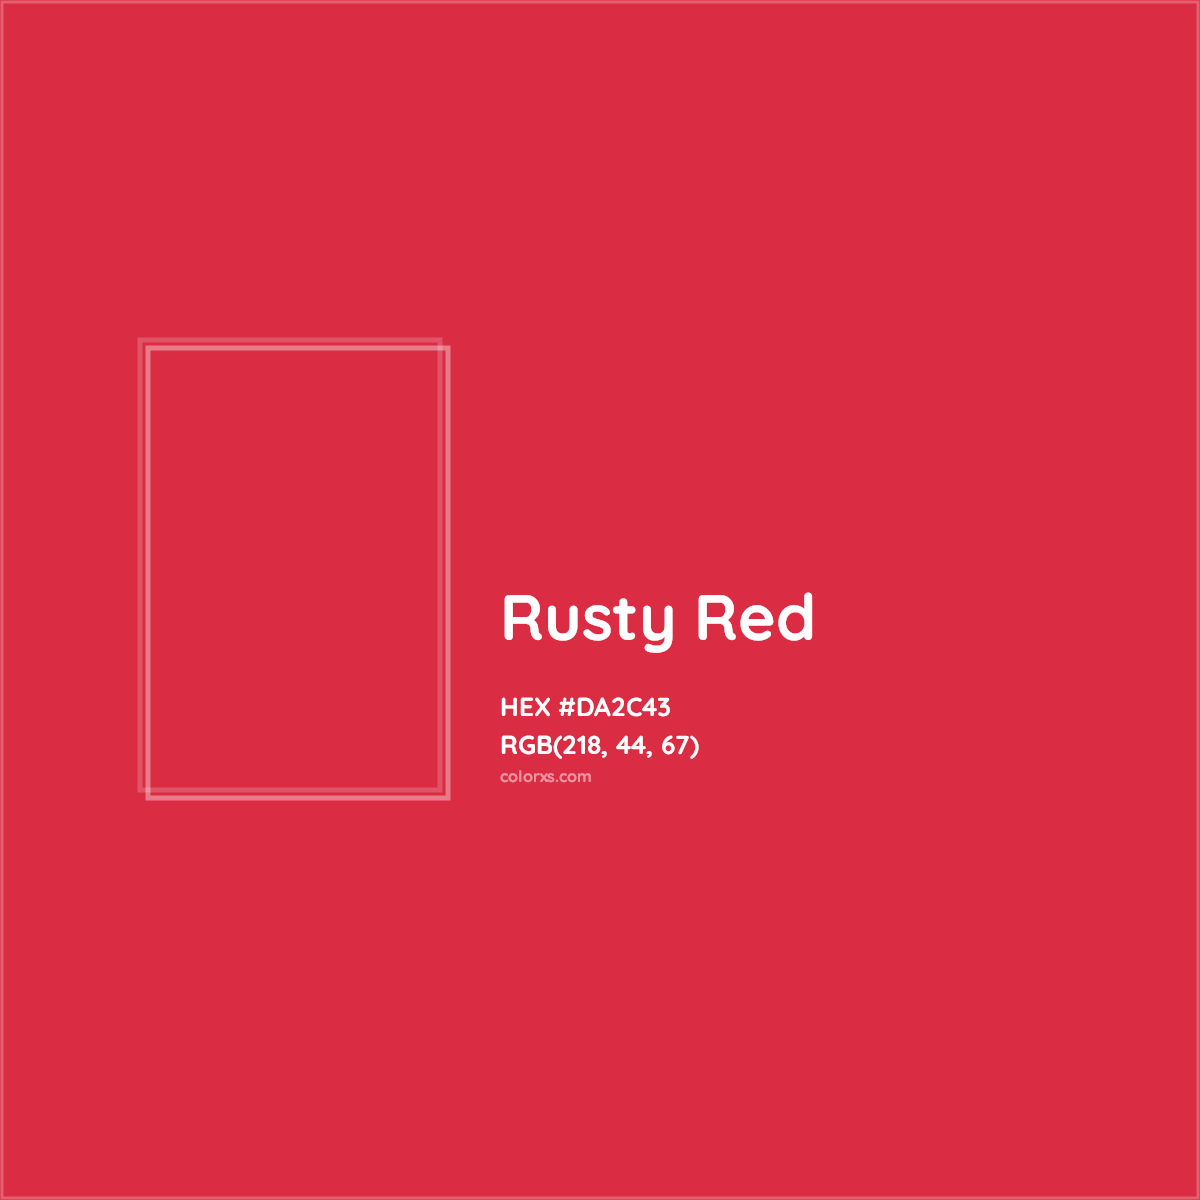 HEX #DA2C43 Rusty Red Color Crayola Crayons - Color Code